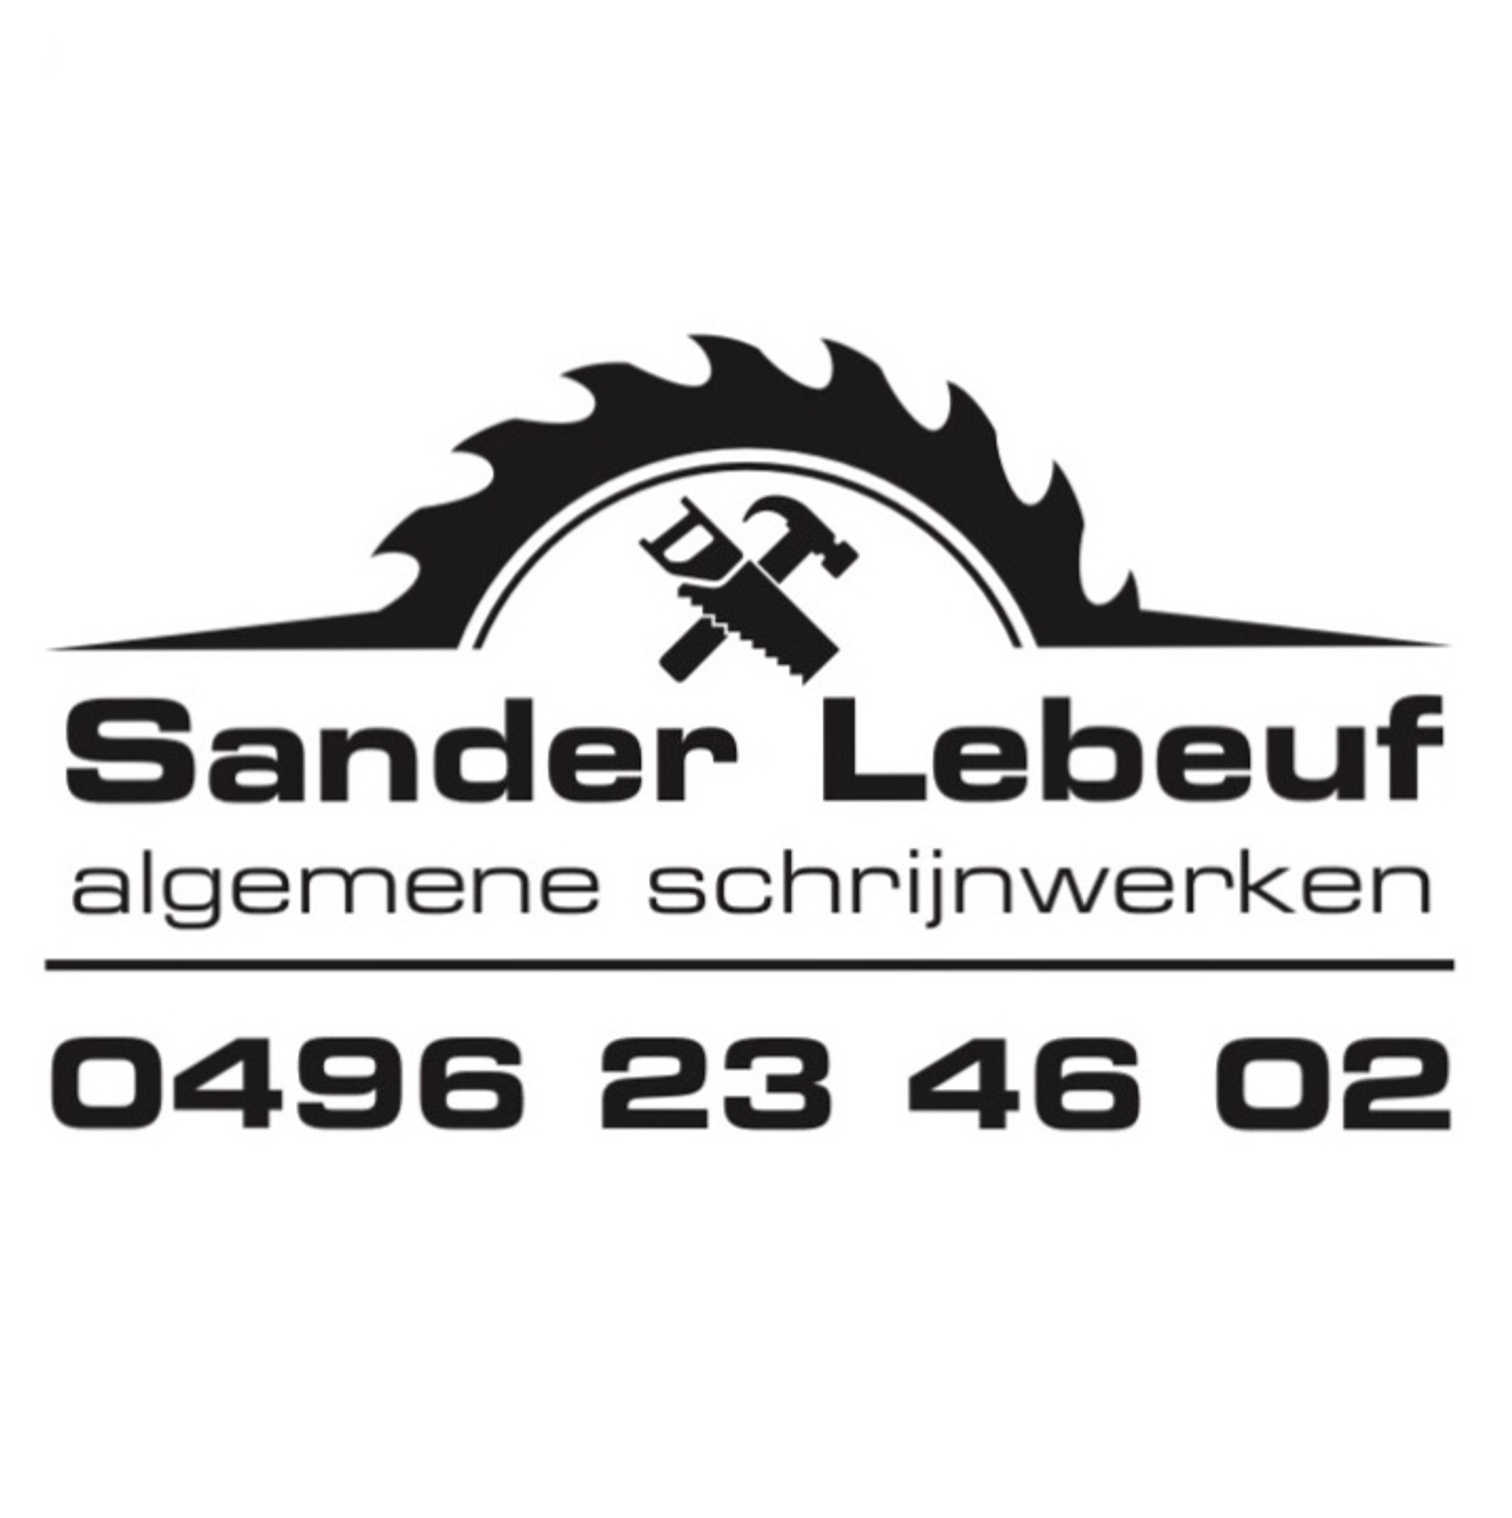 Algemene schrijnwerken Sander Lebeuf  logo